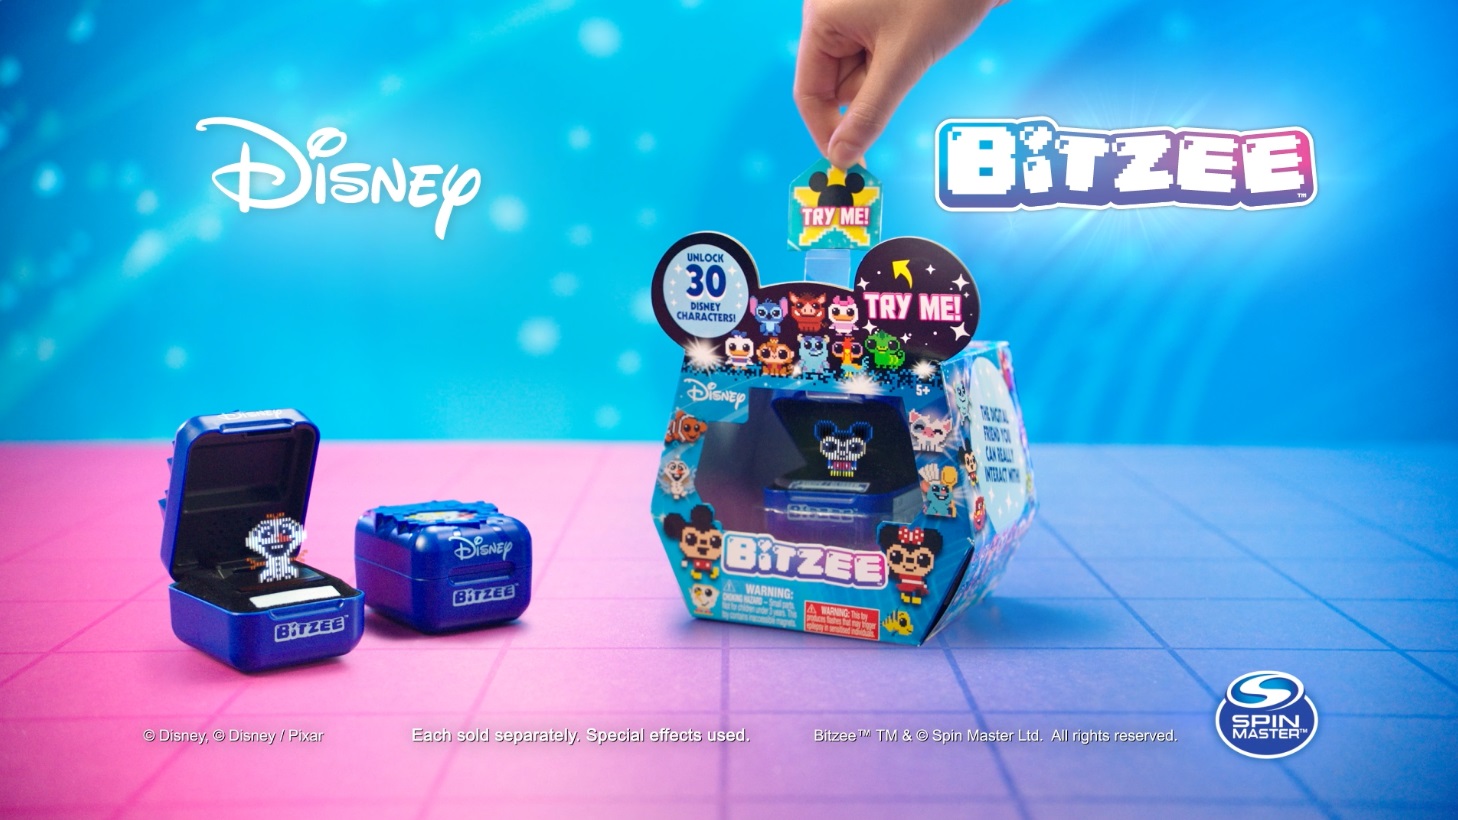 Bitzee, o"tamagotchi interativo" agora conta com personagens da Disney e Pixar